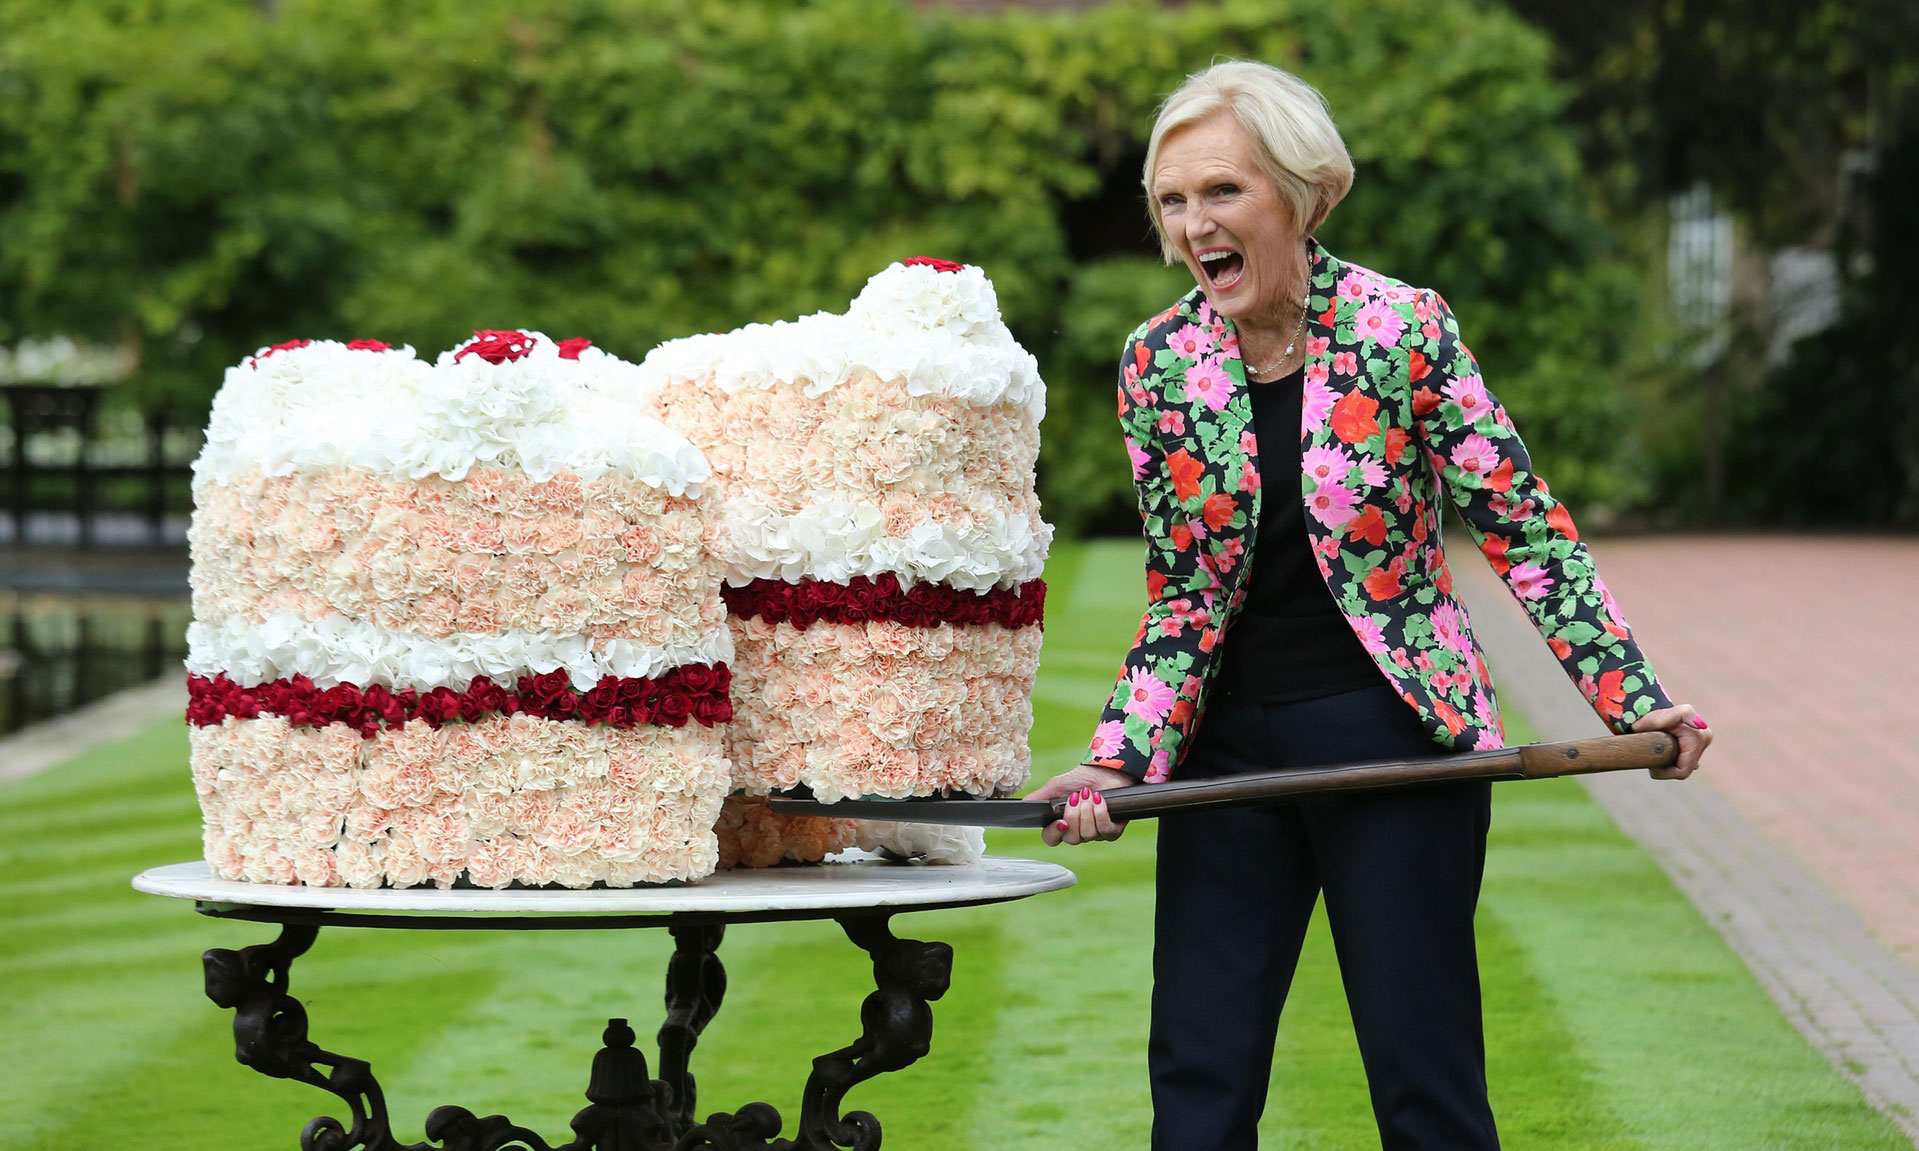 مسابقه کیک پزی - برترین عکس های خبری هفته